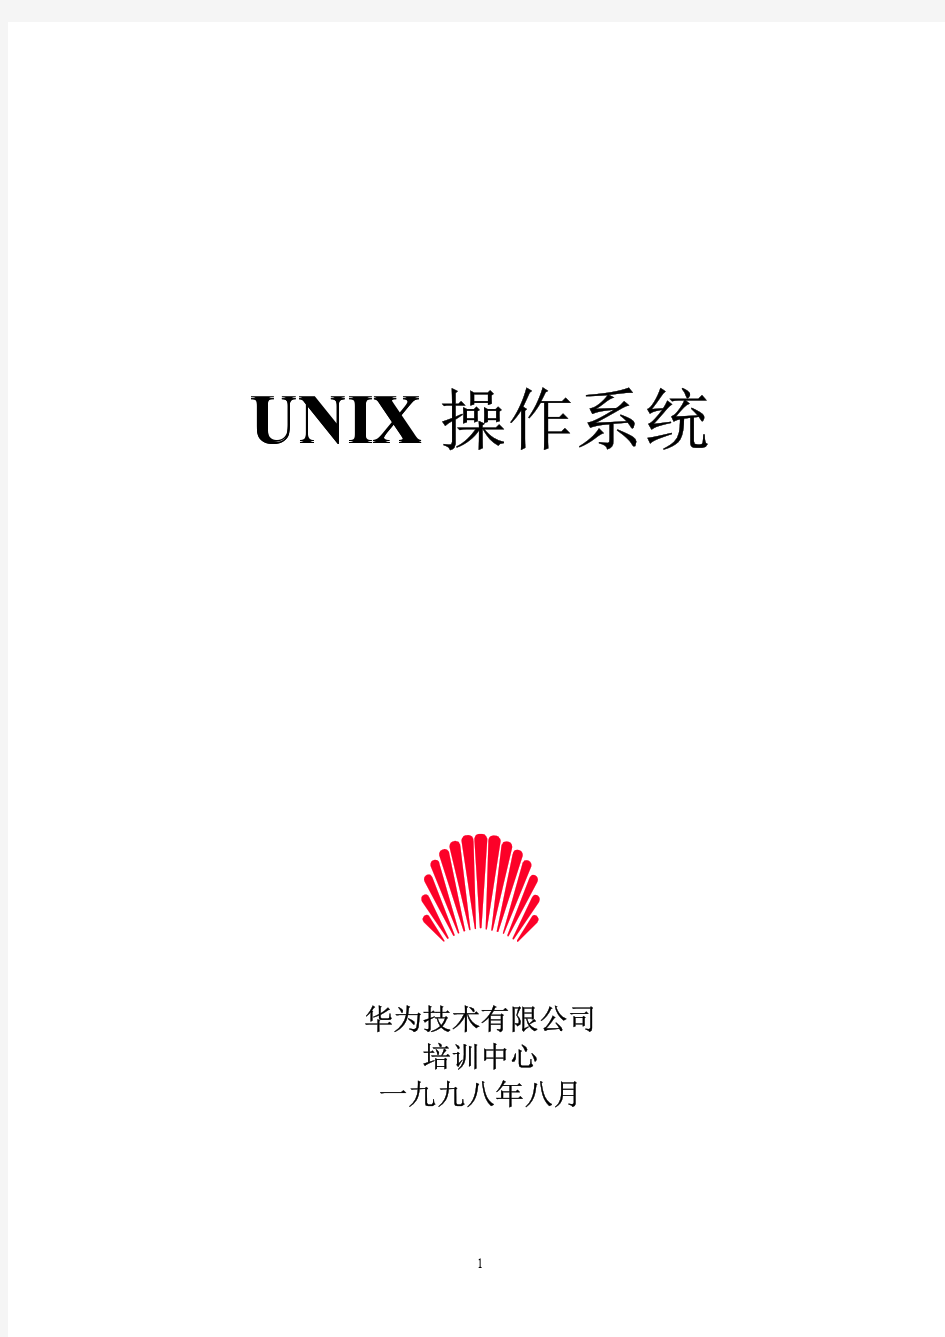 深圳华为SCO_unix培训教程